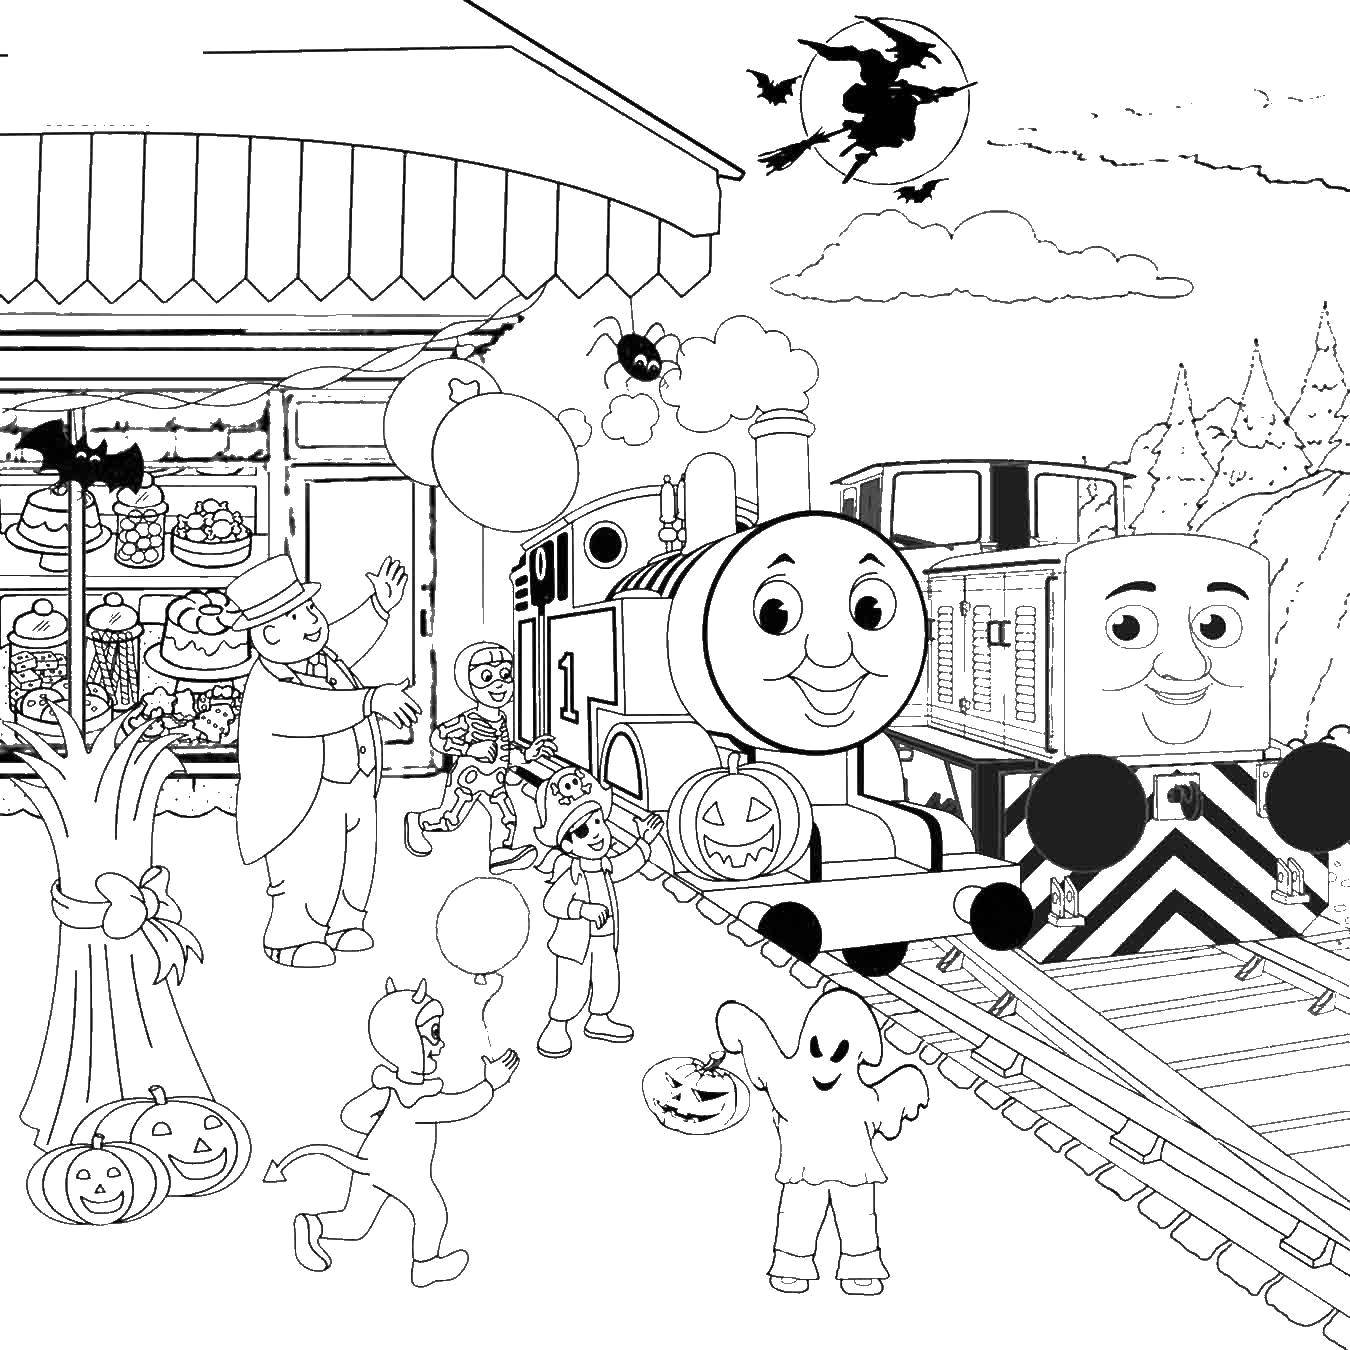 Раскраска Паровозик Томас для детей. Из мультфильма Томас. (Паровозик, Томас, развивающие)